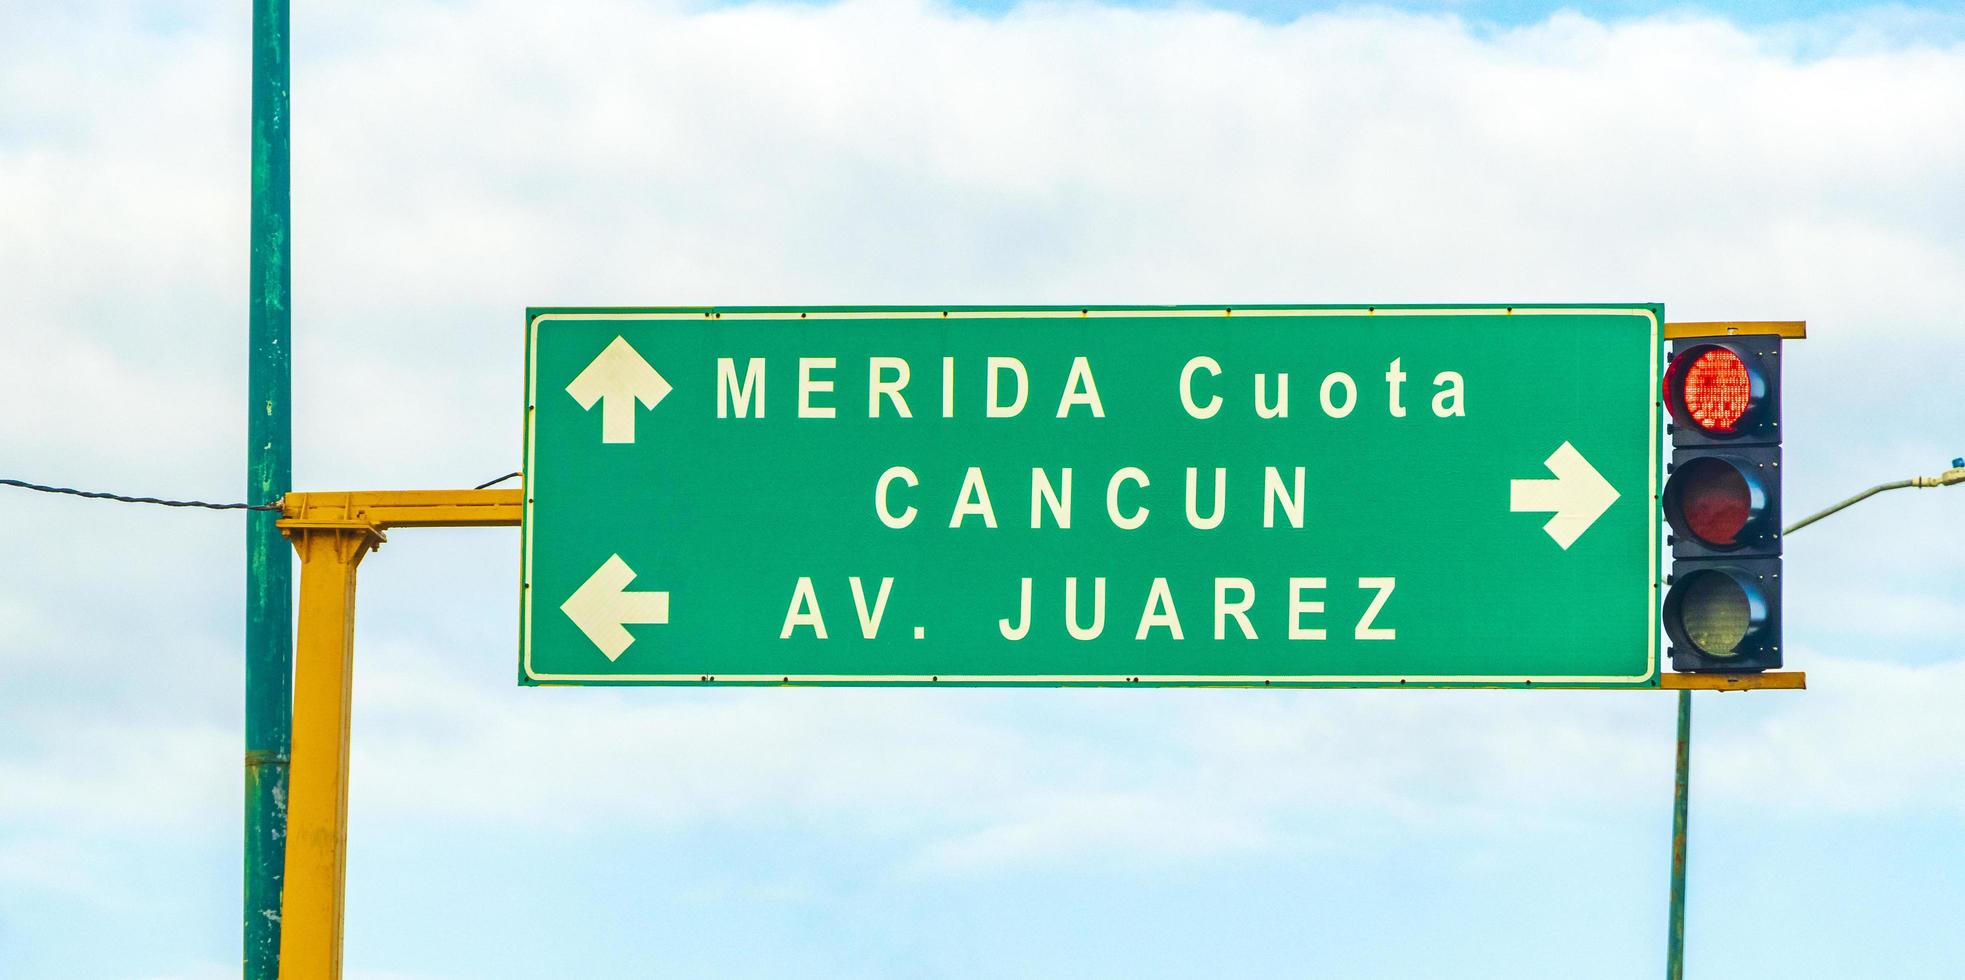 Playa del Carmen Quintana Roo Mexico 2022 Road sign at highway motorway in Playa del Carmen Mexico. photo